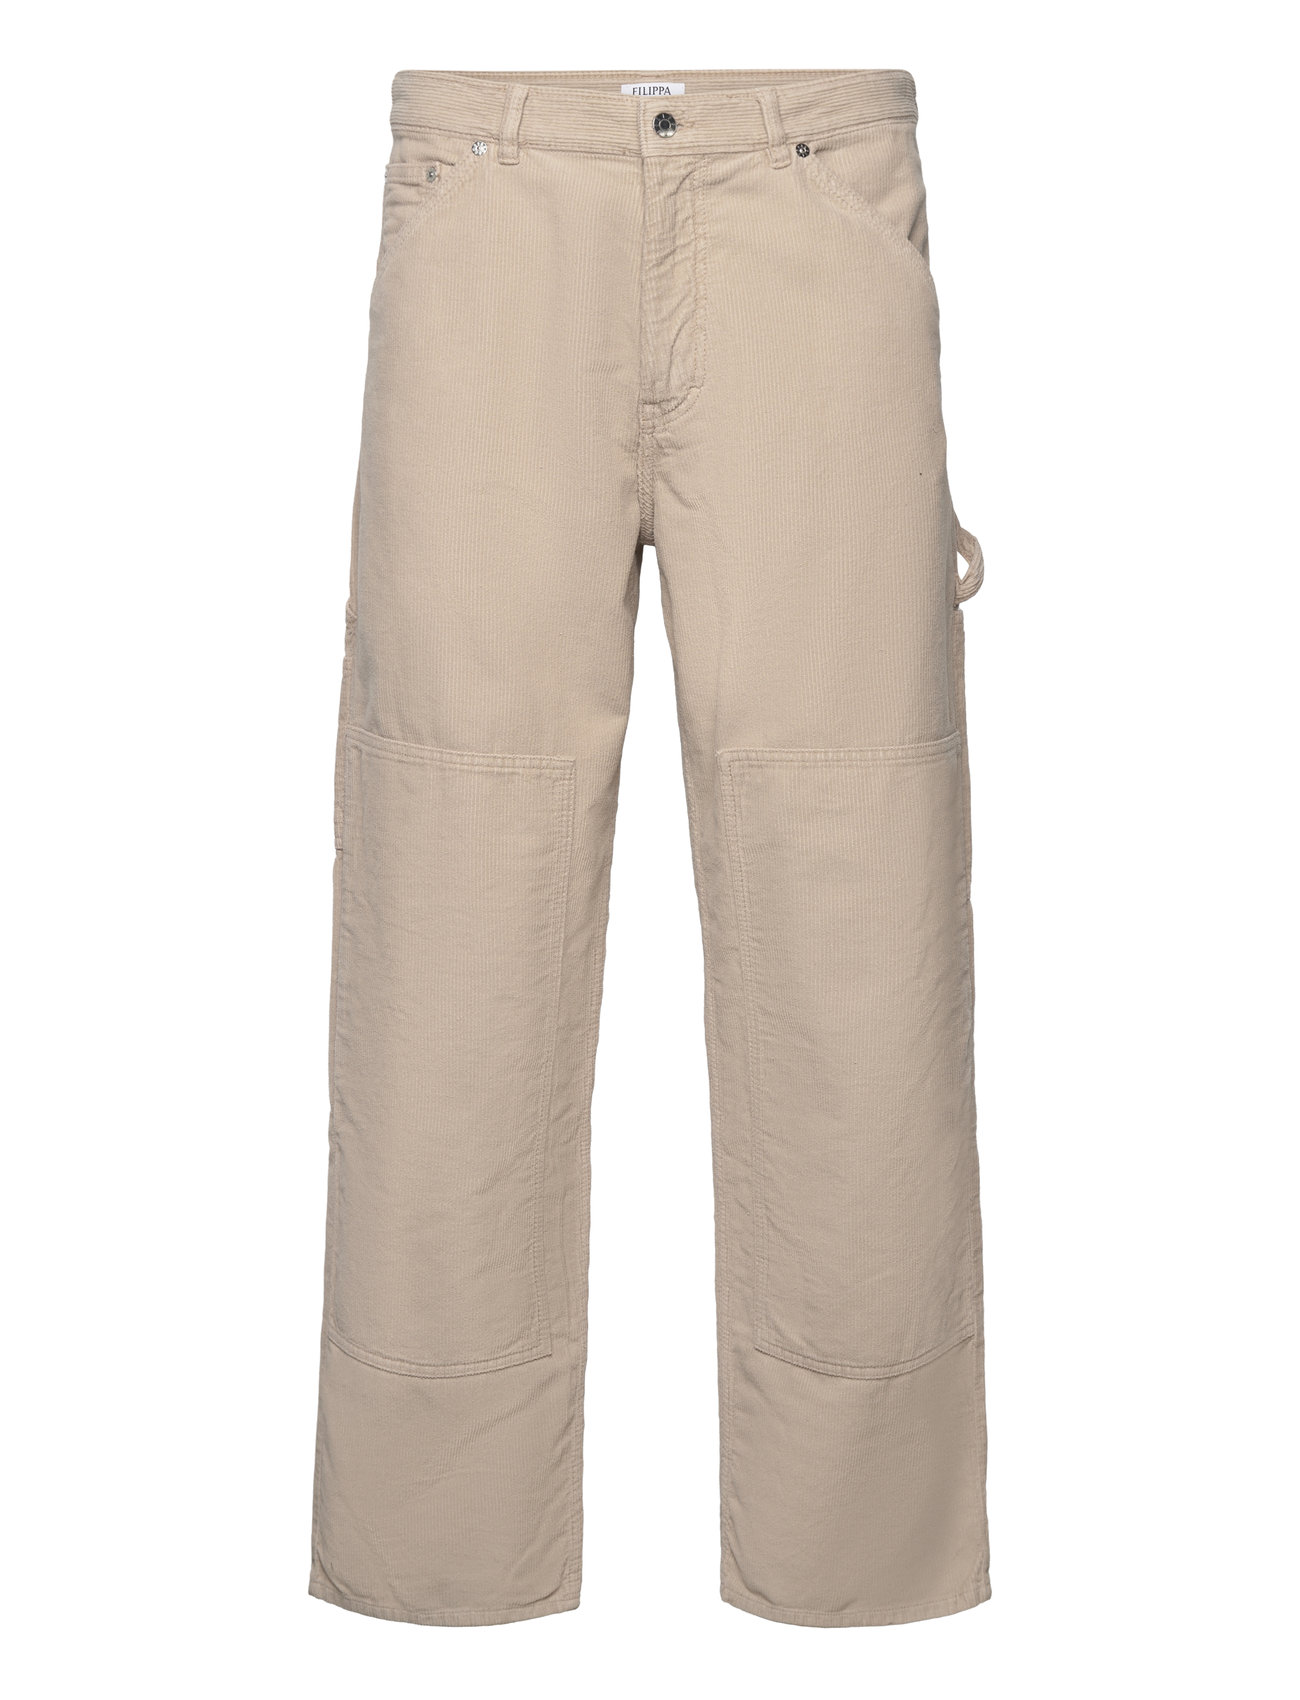 Corduroy Workwear Trousers Designers Trousers Cargo Pants Beige Filippa K